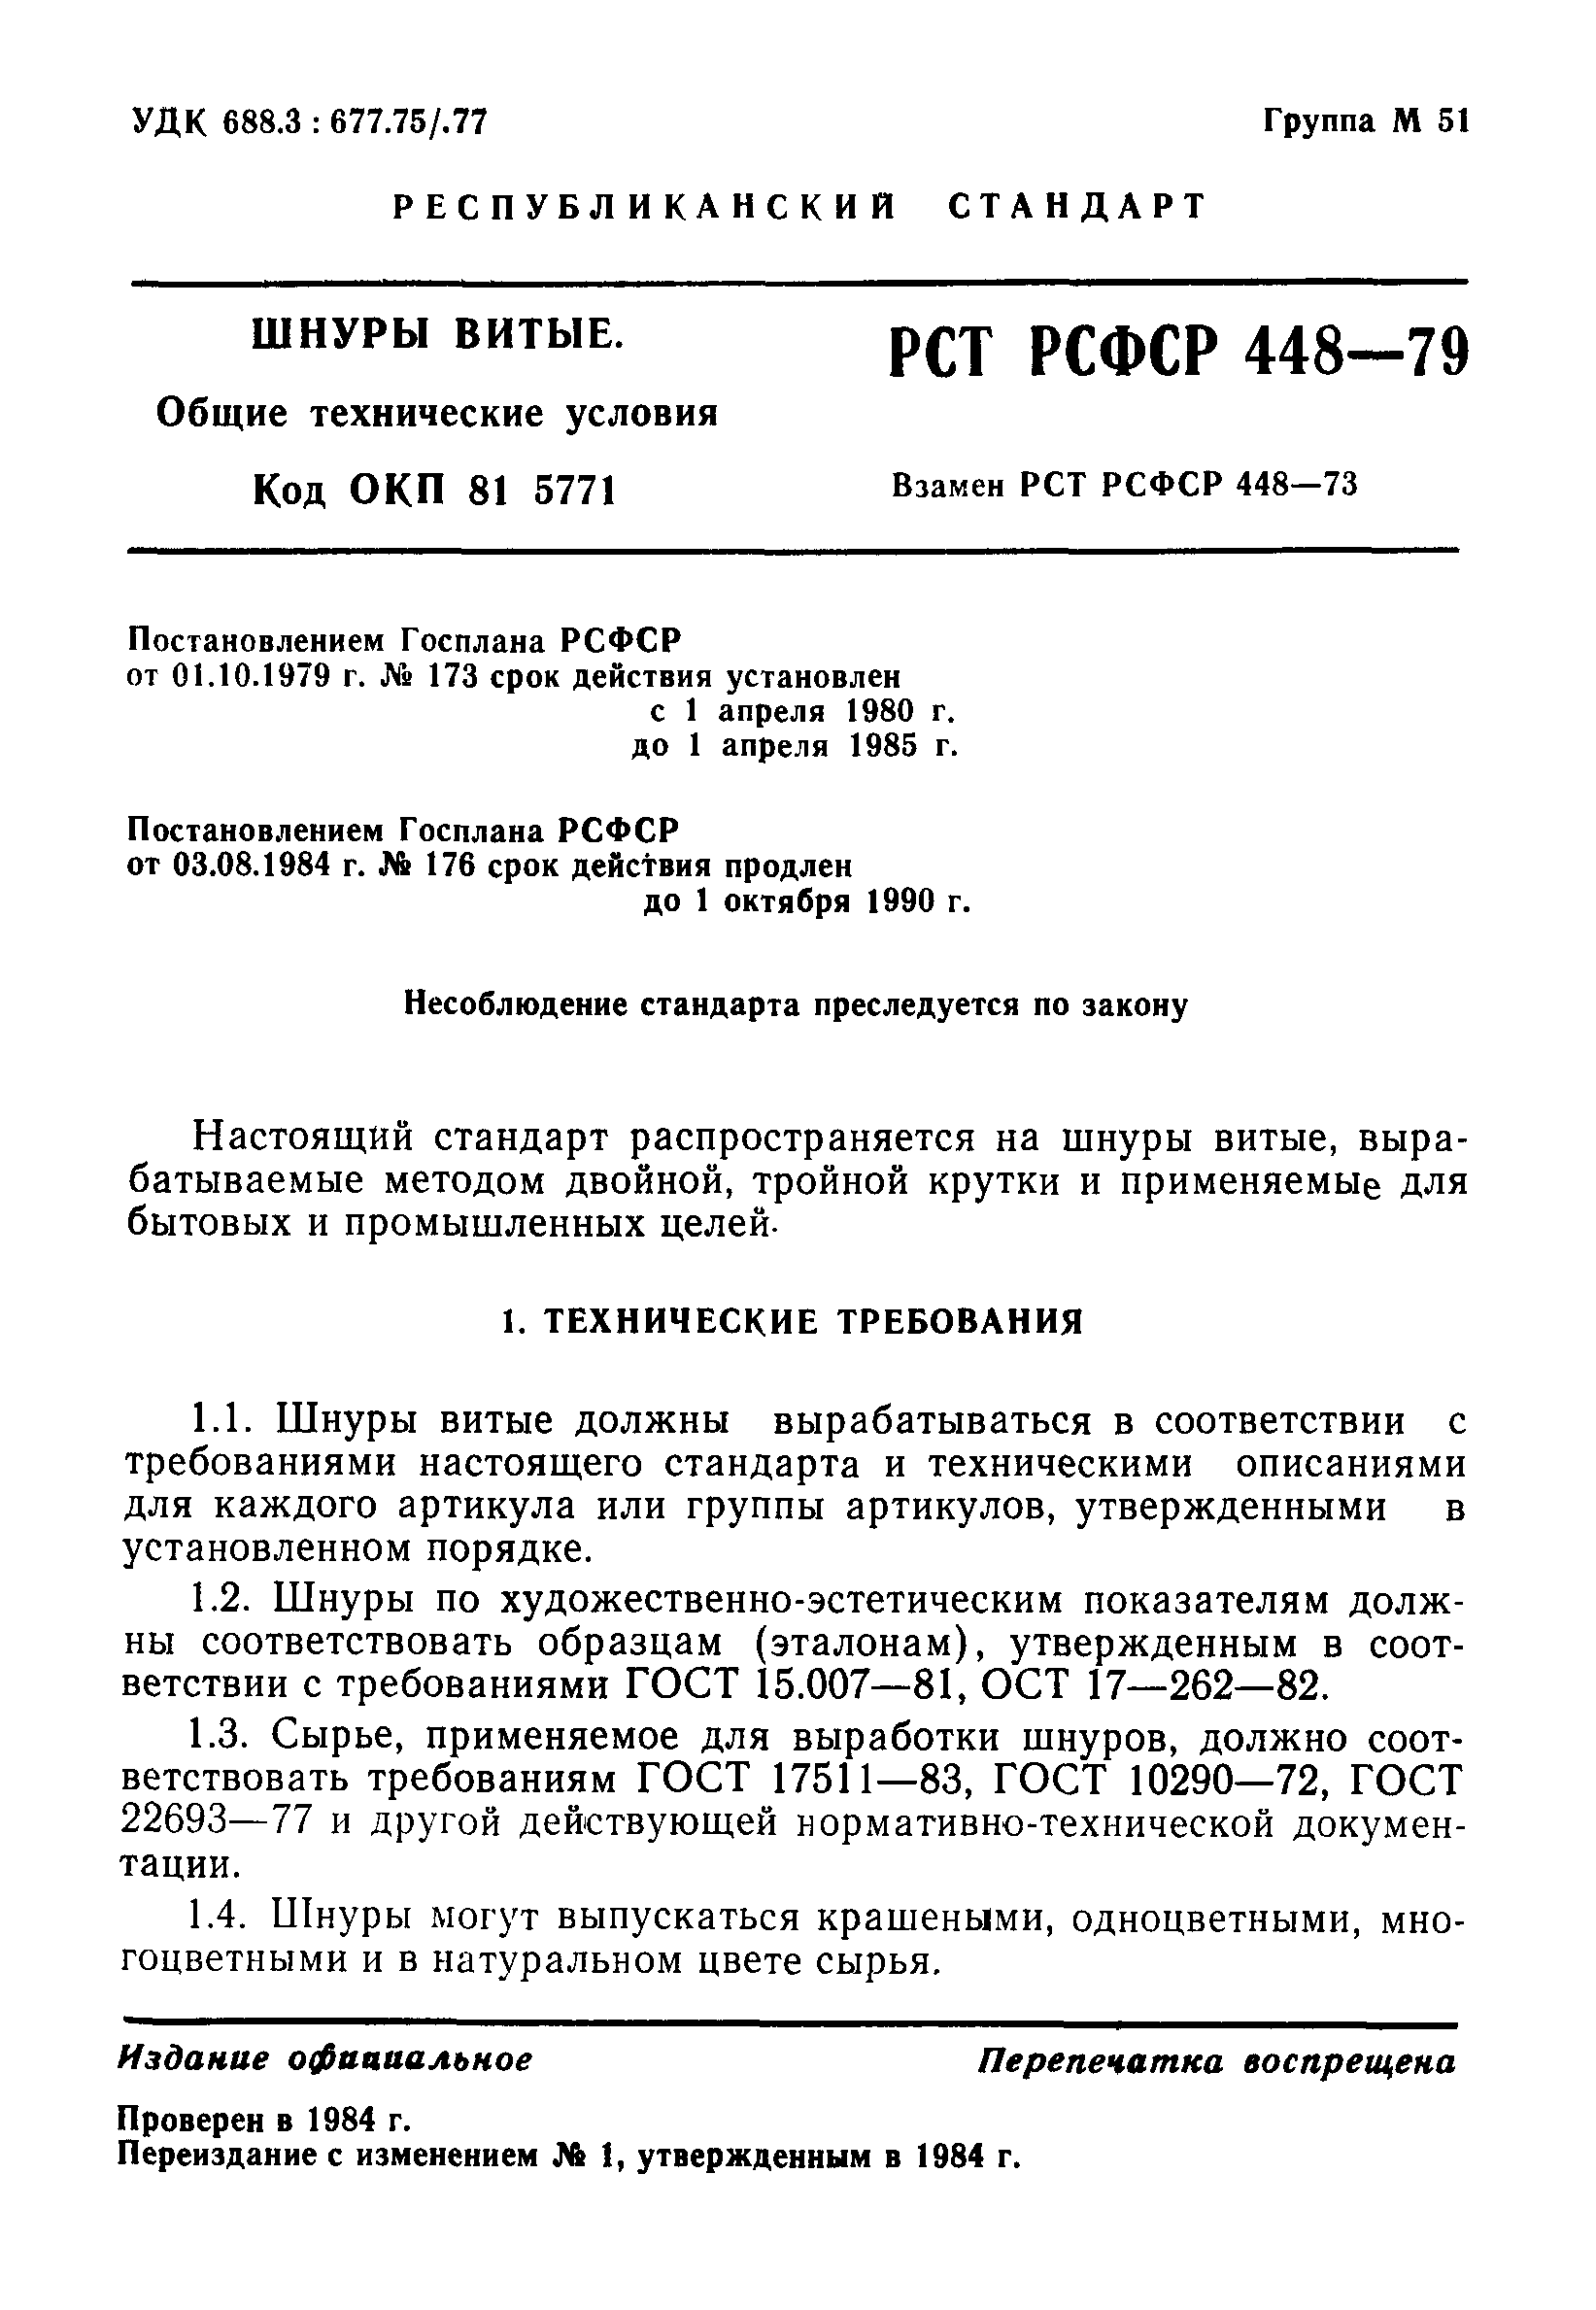 РСТ РСФСР 448-79